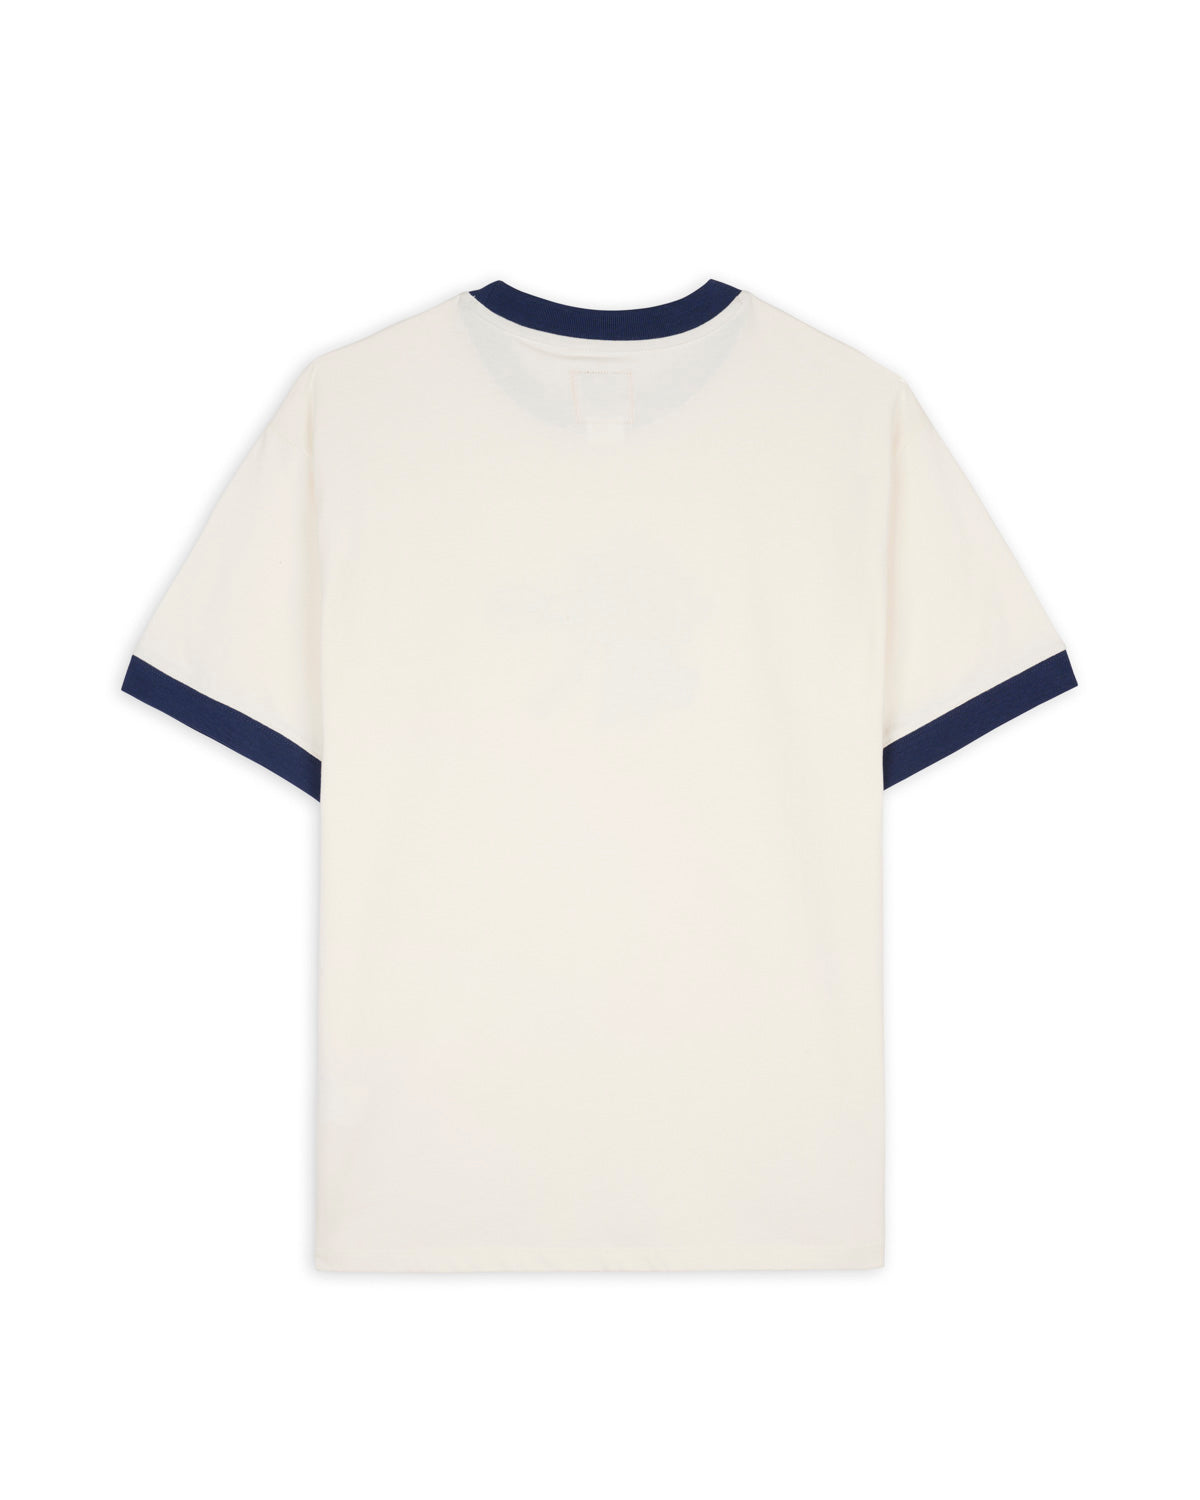 Dickies Hard Hat Embroidered Ringer T-Shirt - Whisper White 2